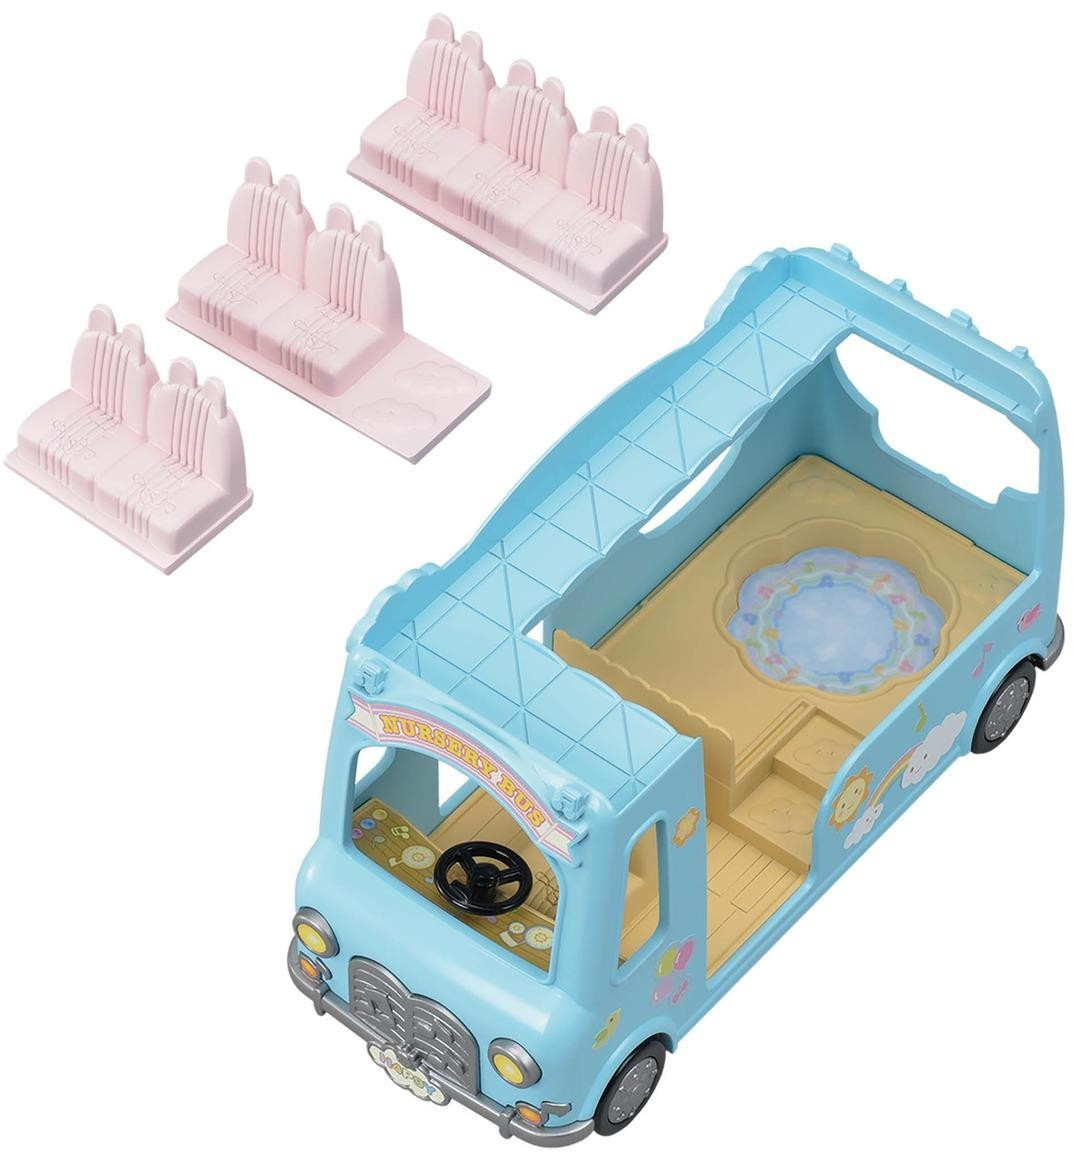 Sylvanian Families® Figurine bus arc-en-ciel des bébés 5317